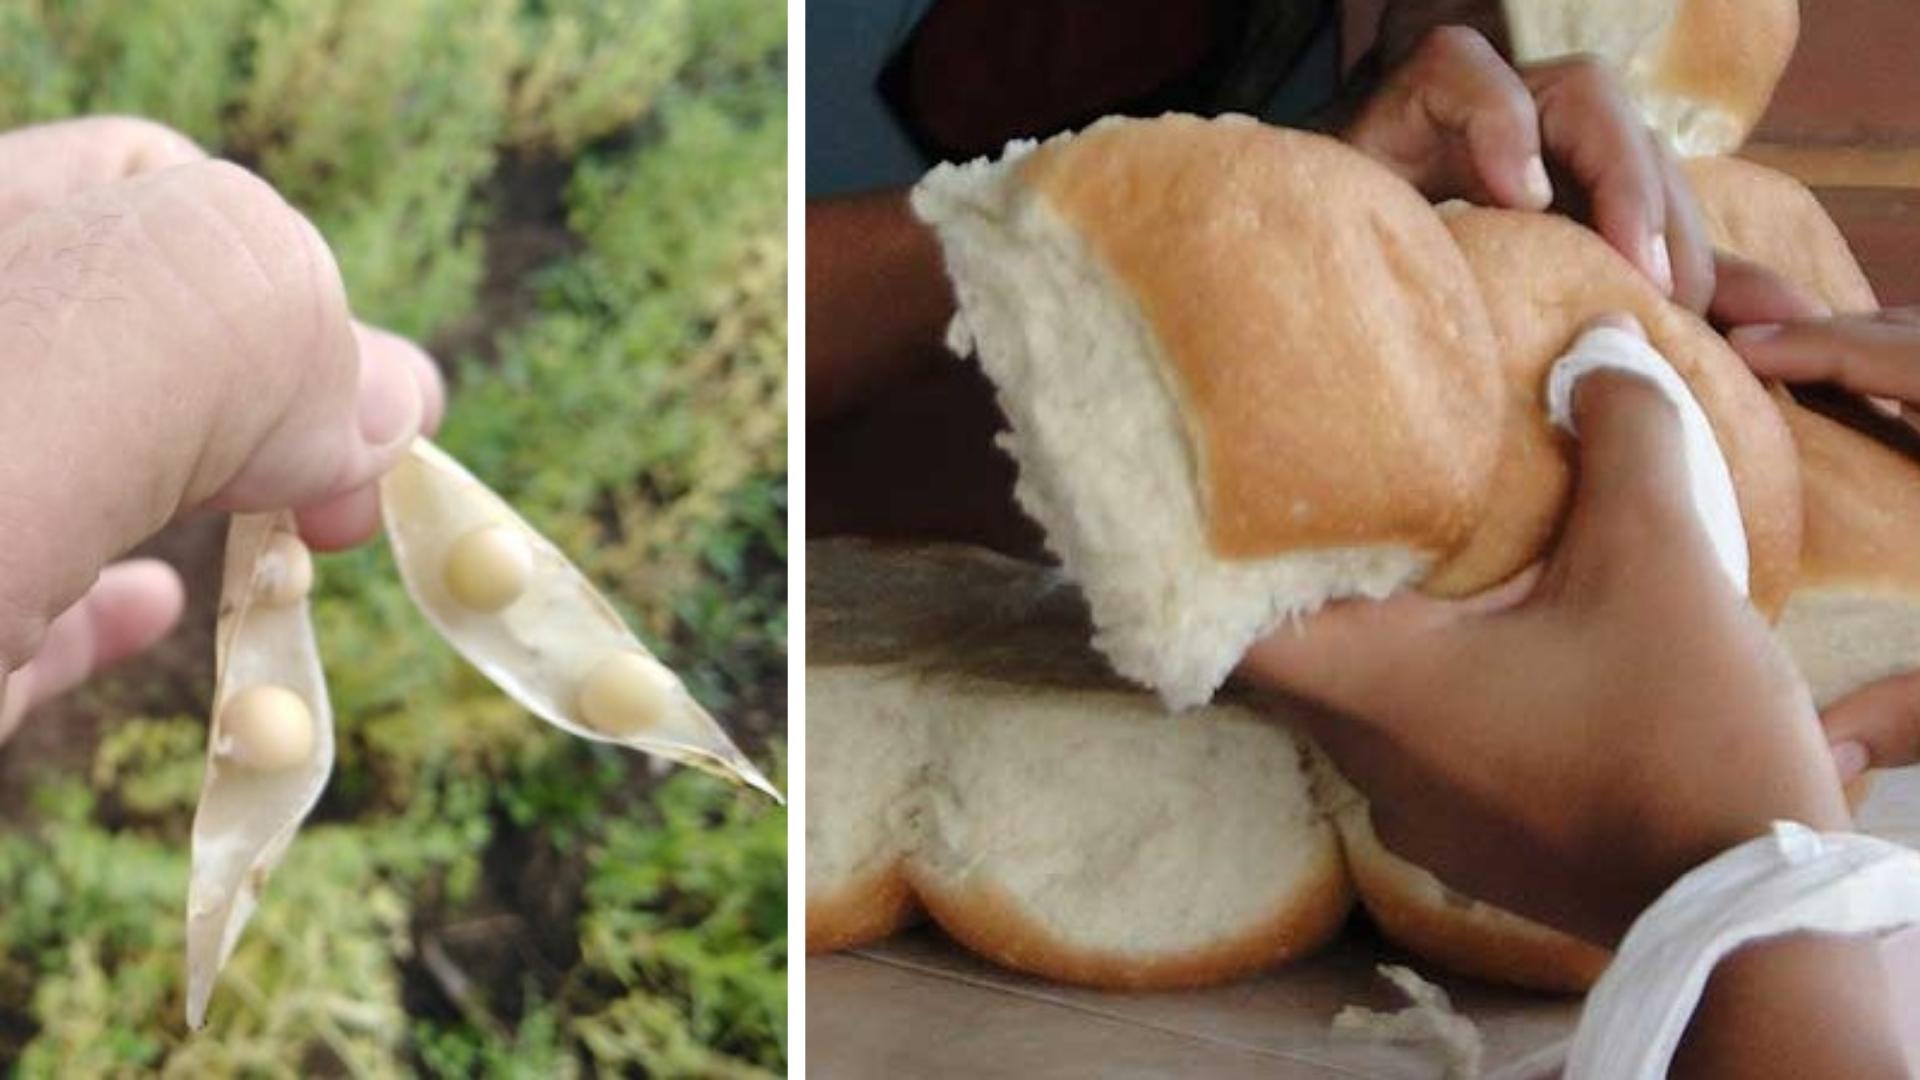 Régimen estudia producir harina de garbanzo: “puede usarse en panadería”